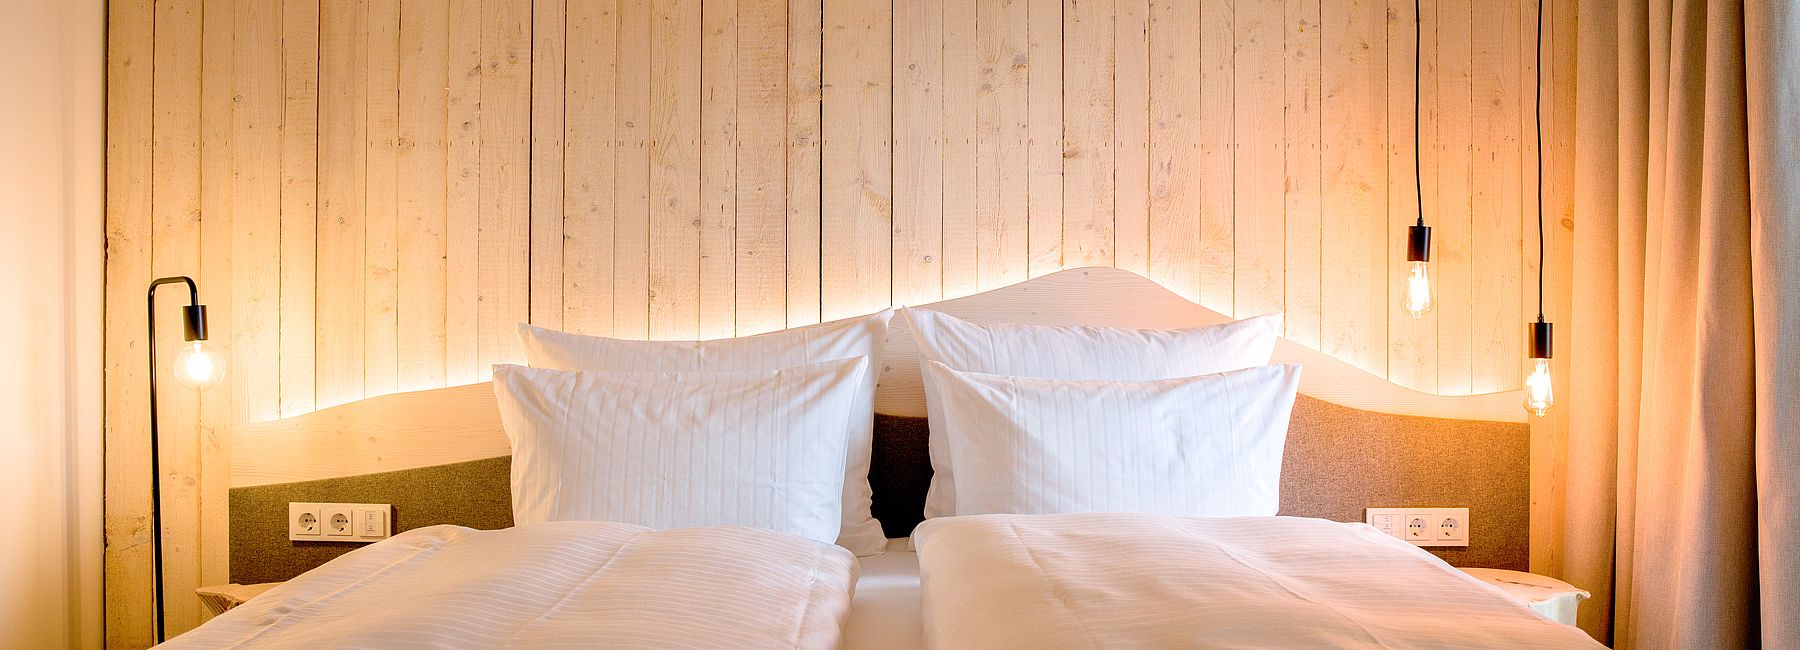 Doppelbett mit Kopfteil aus Holz und indirekter Beleuchtung mit modernen Retro-Lampen